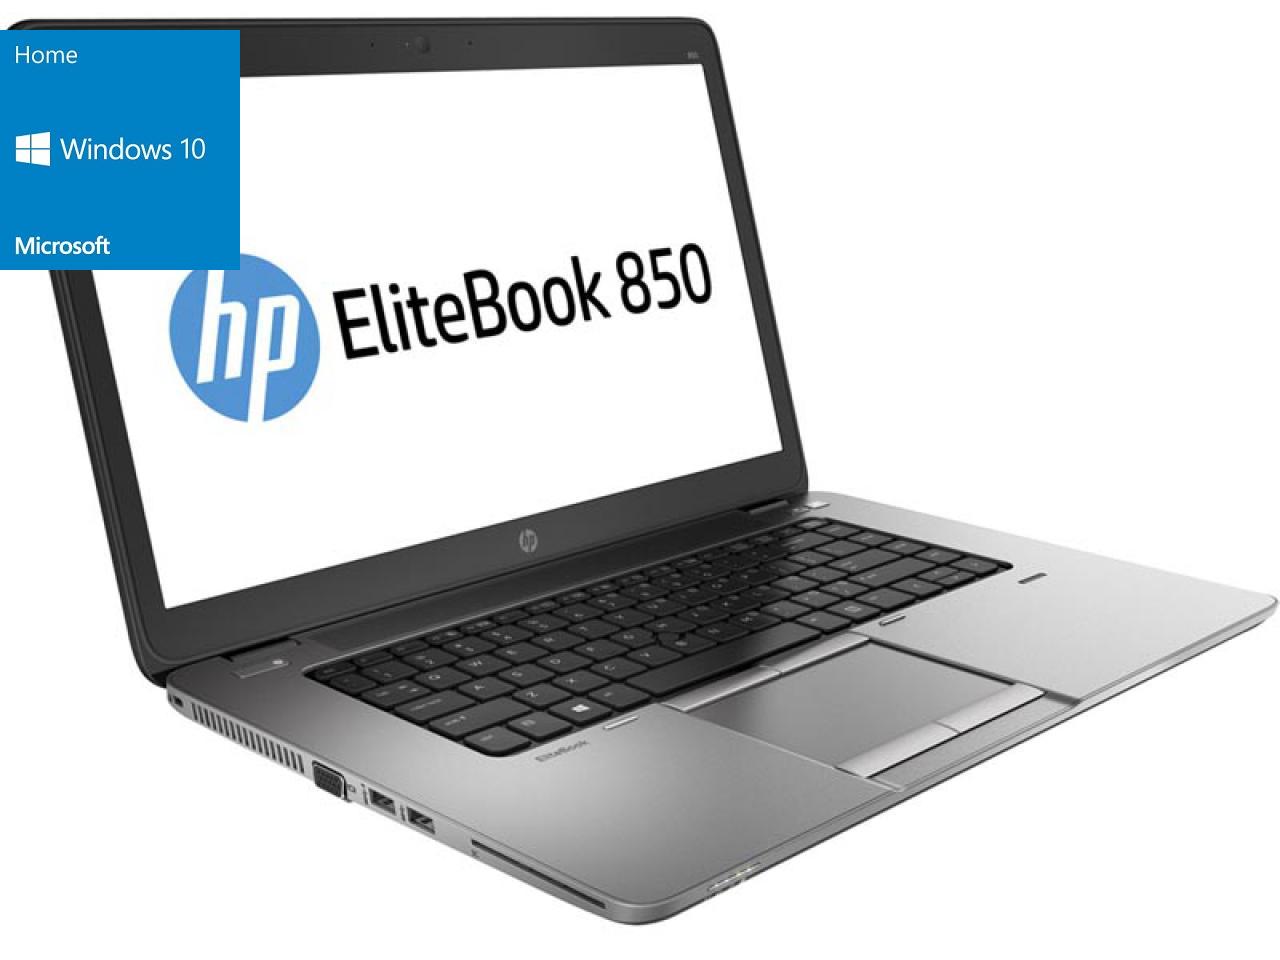 Hewlett Packard EliteBook 850 G2  - shop.bb-net.de